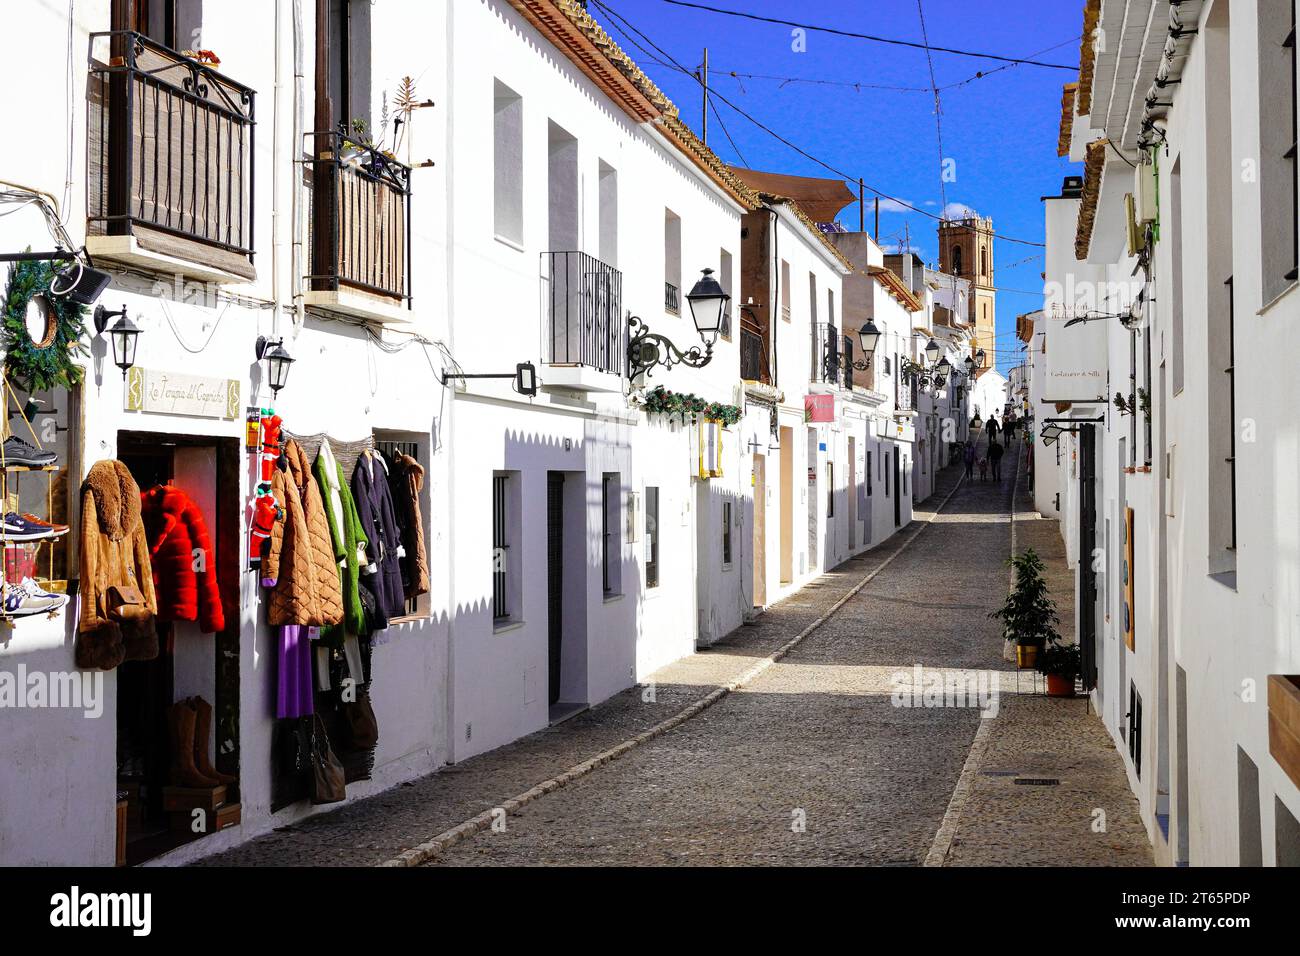 Rue principale dans la ville de construction blanche méditerranéenne d'Altea, Alicante, Espagne Banque D'Images